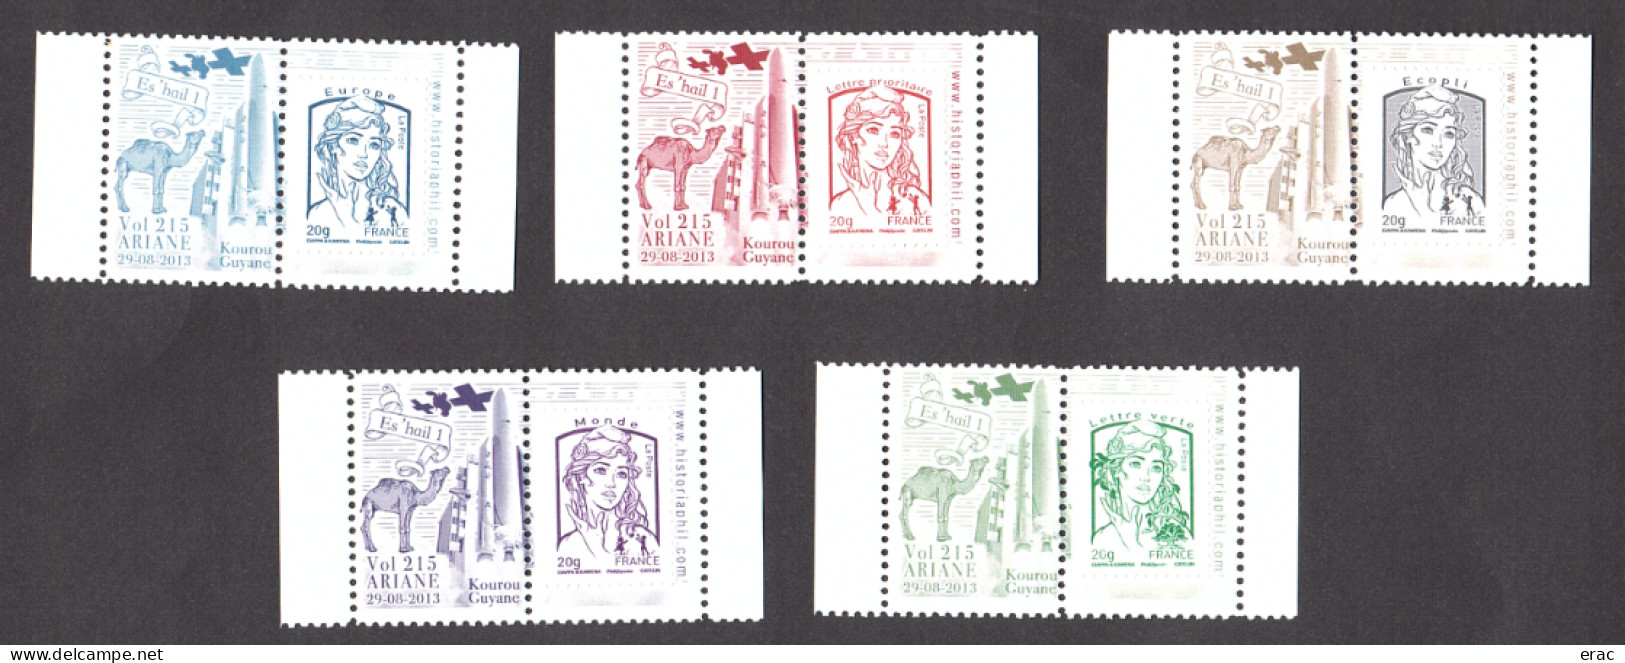 5 Porte-timbres Gommés - 2013 Ariane Vol 215 - Es'hail 1 - Avec TVP Marianne De Ciappa & Kawena Neufs - 2013-2018 Marianne Van Ciappa-Kawena